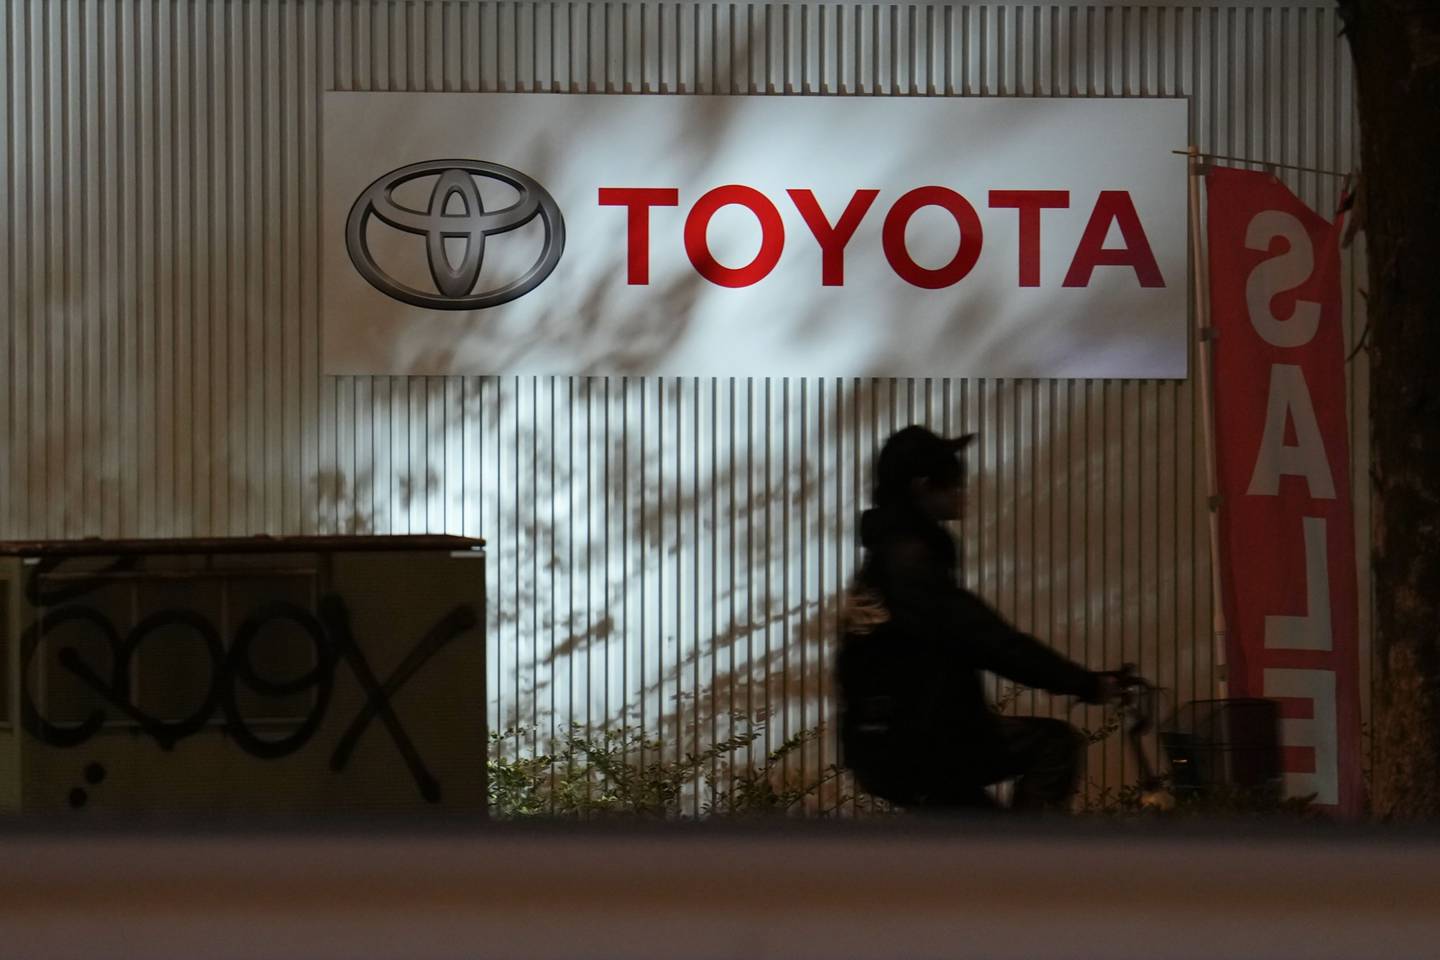 Se confirmado, o ataque seria o segundo recente a um fornecedor da Toyota